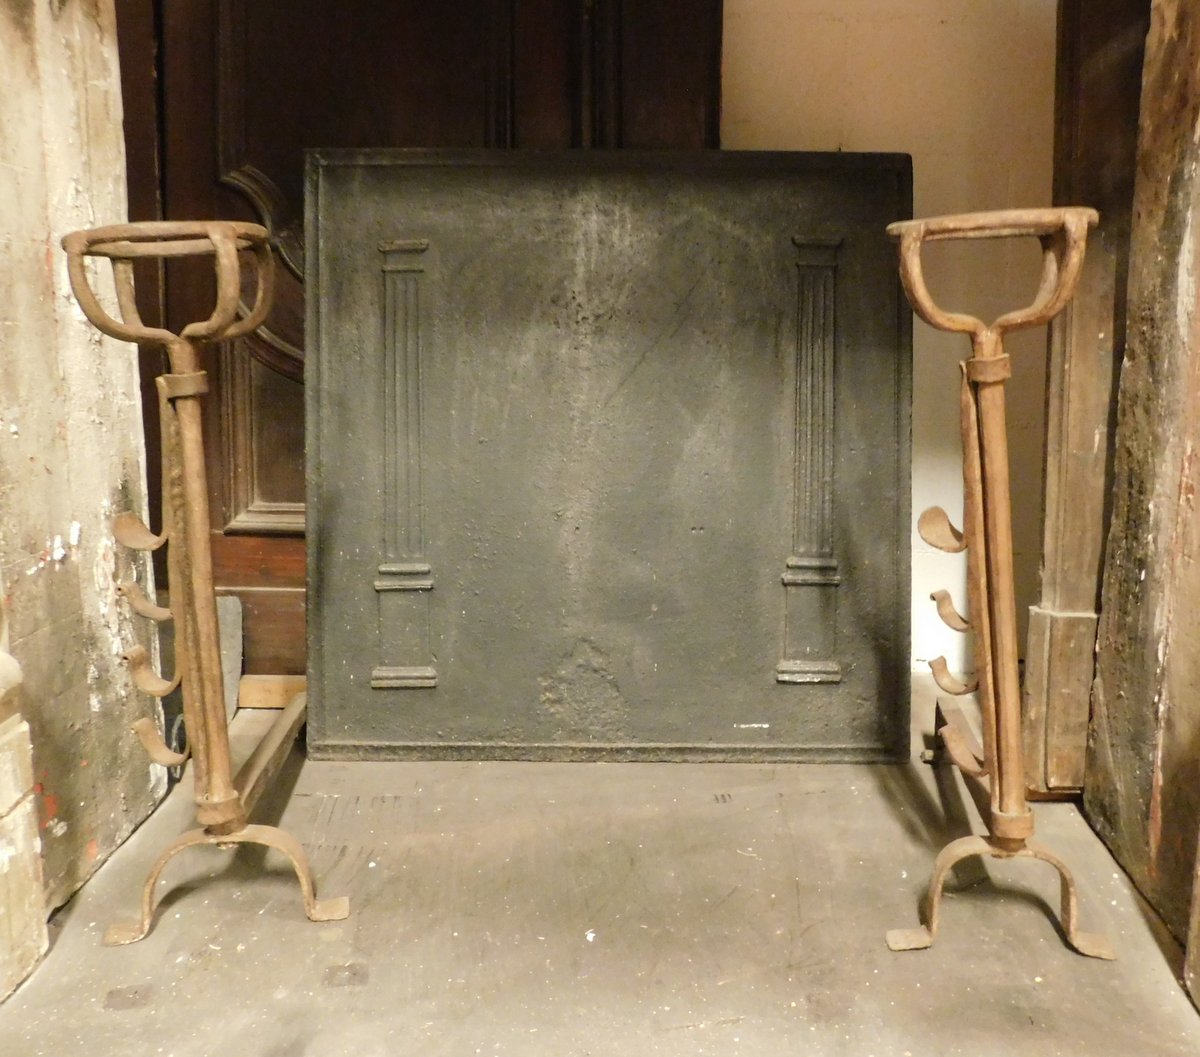 al192 - coppia di alari in ferro con porta coppetta, cm l 23 x h 68 x p. 46